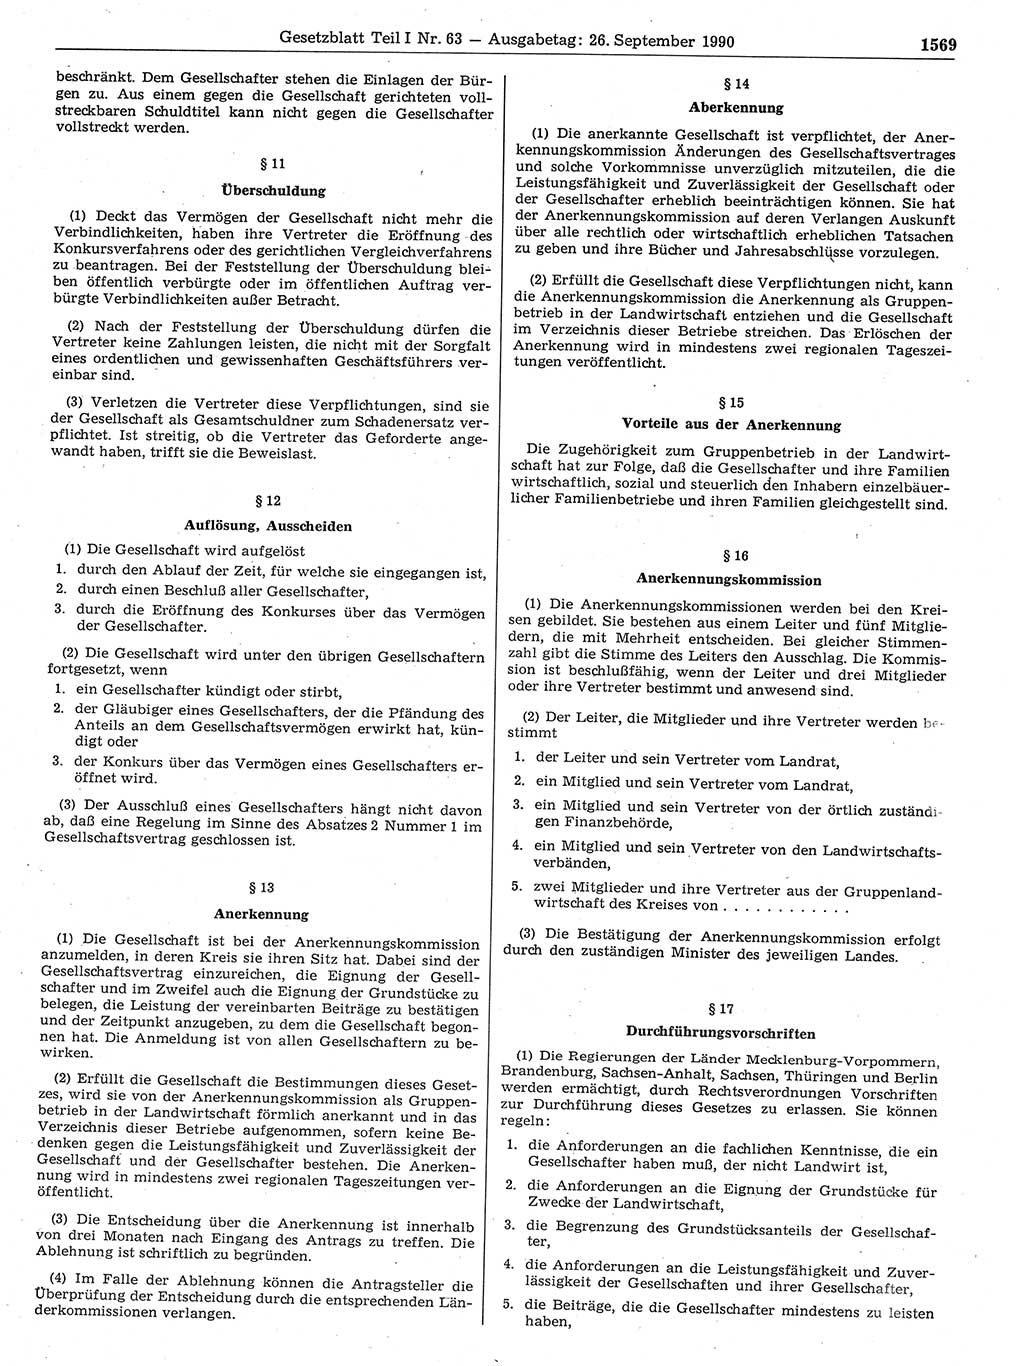 Gesetzblatt (GBl.) der Deutschen Demokratischen Republik (DDR) Teil Ⅰ 1990, Seite 1569 (GBl. DDR Ⅰ 1990, S. 1569)